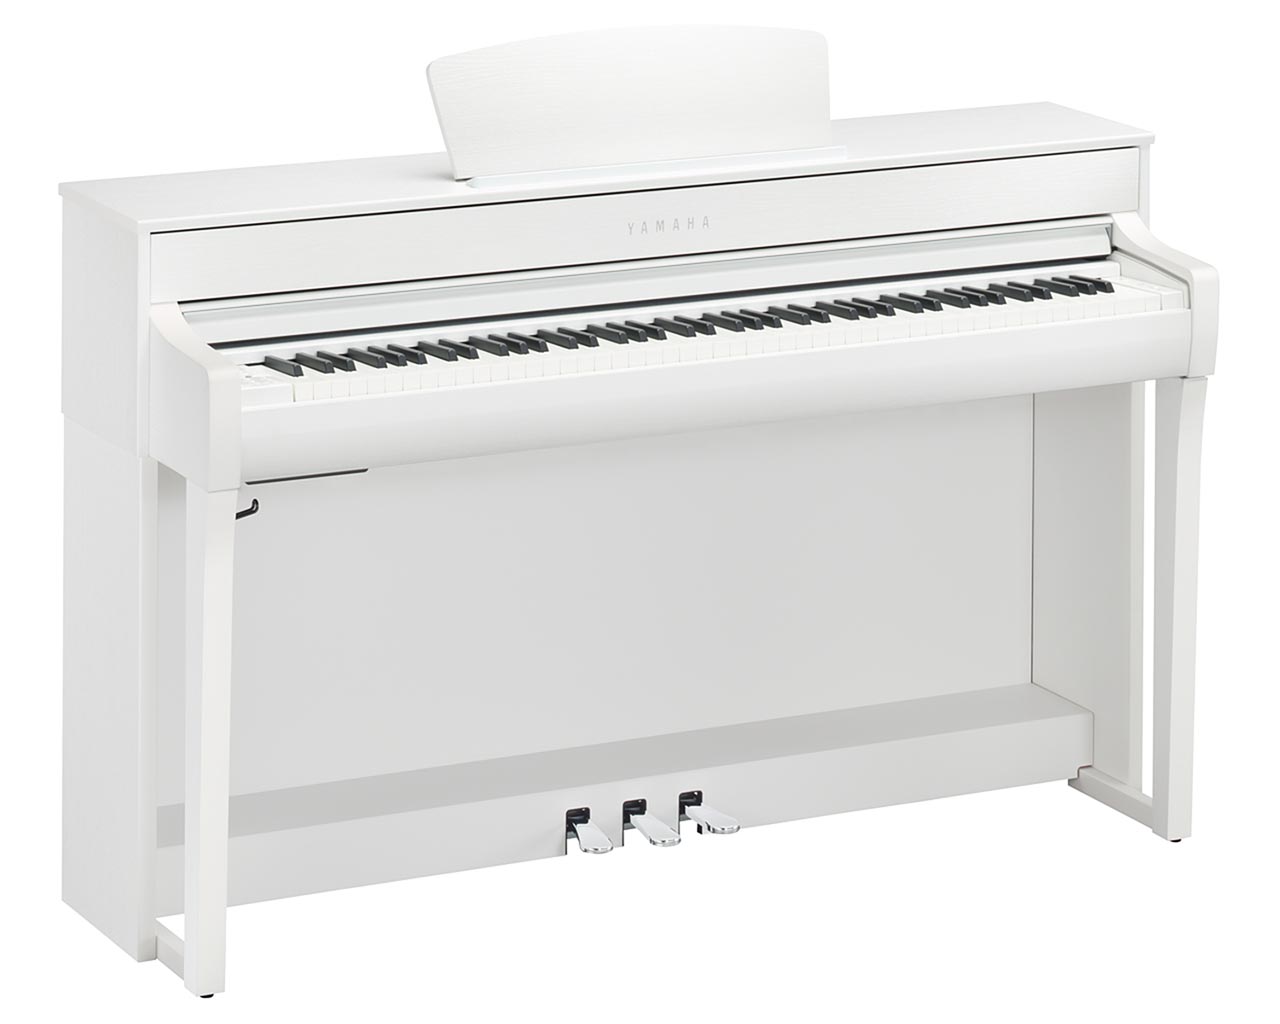 Yamaha-Clavinova-CLP-735-WH-Digitalpiano-weiß-Pianohaus-Filipski